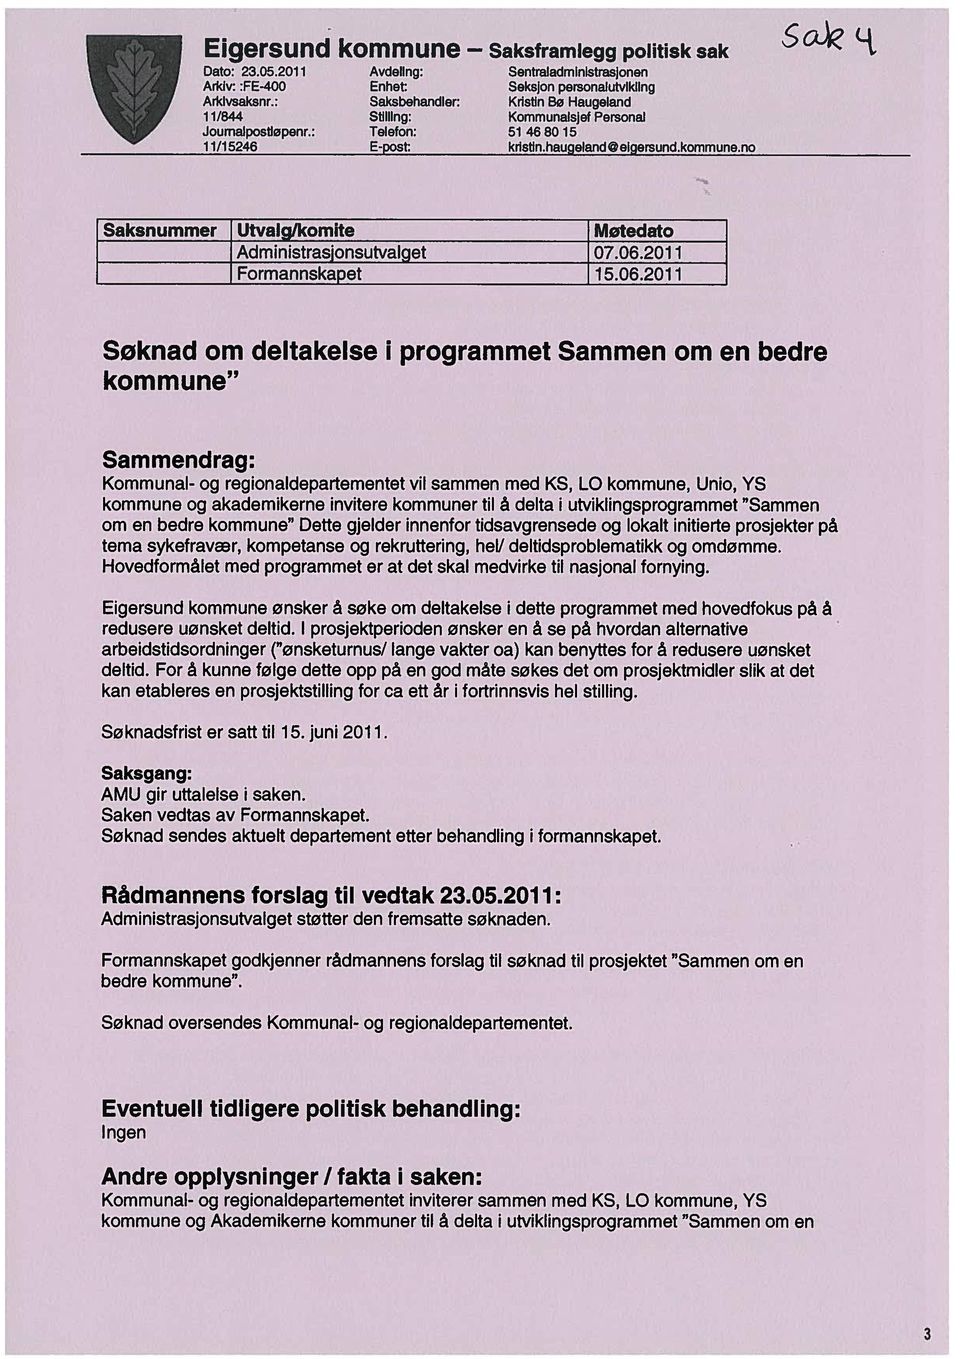 Saksnummer Utvalg/komite Møtedato Administrasjonsutvalget 07.06.